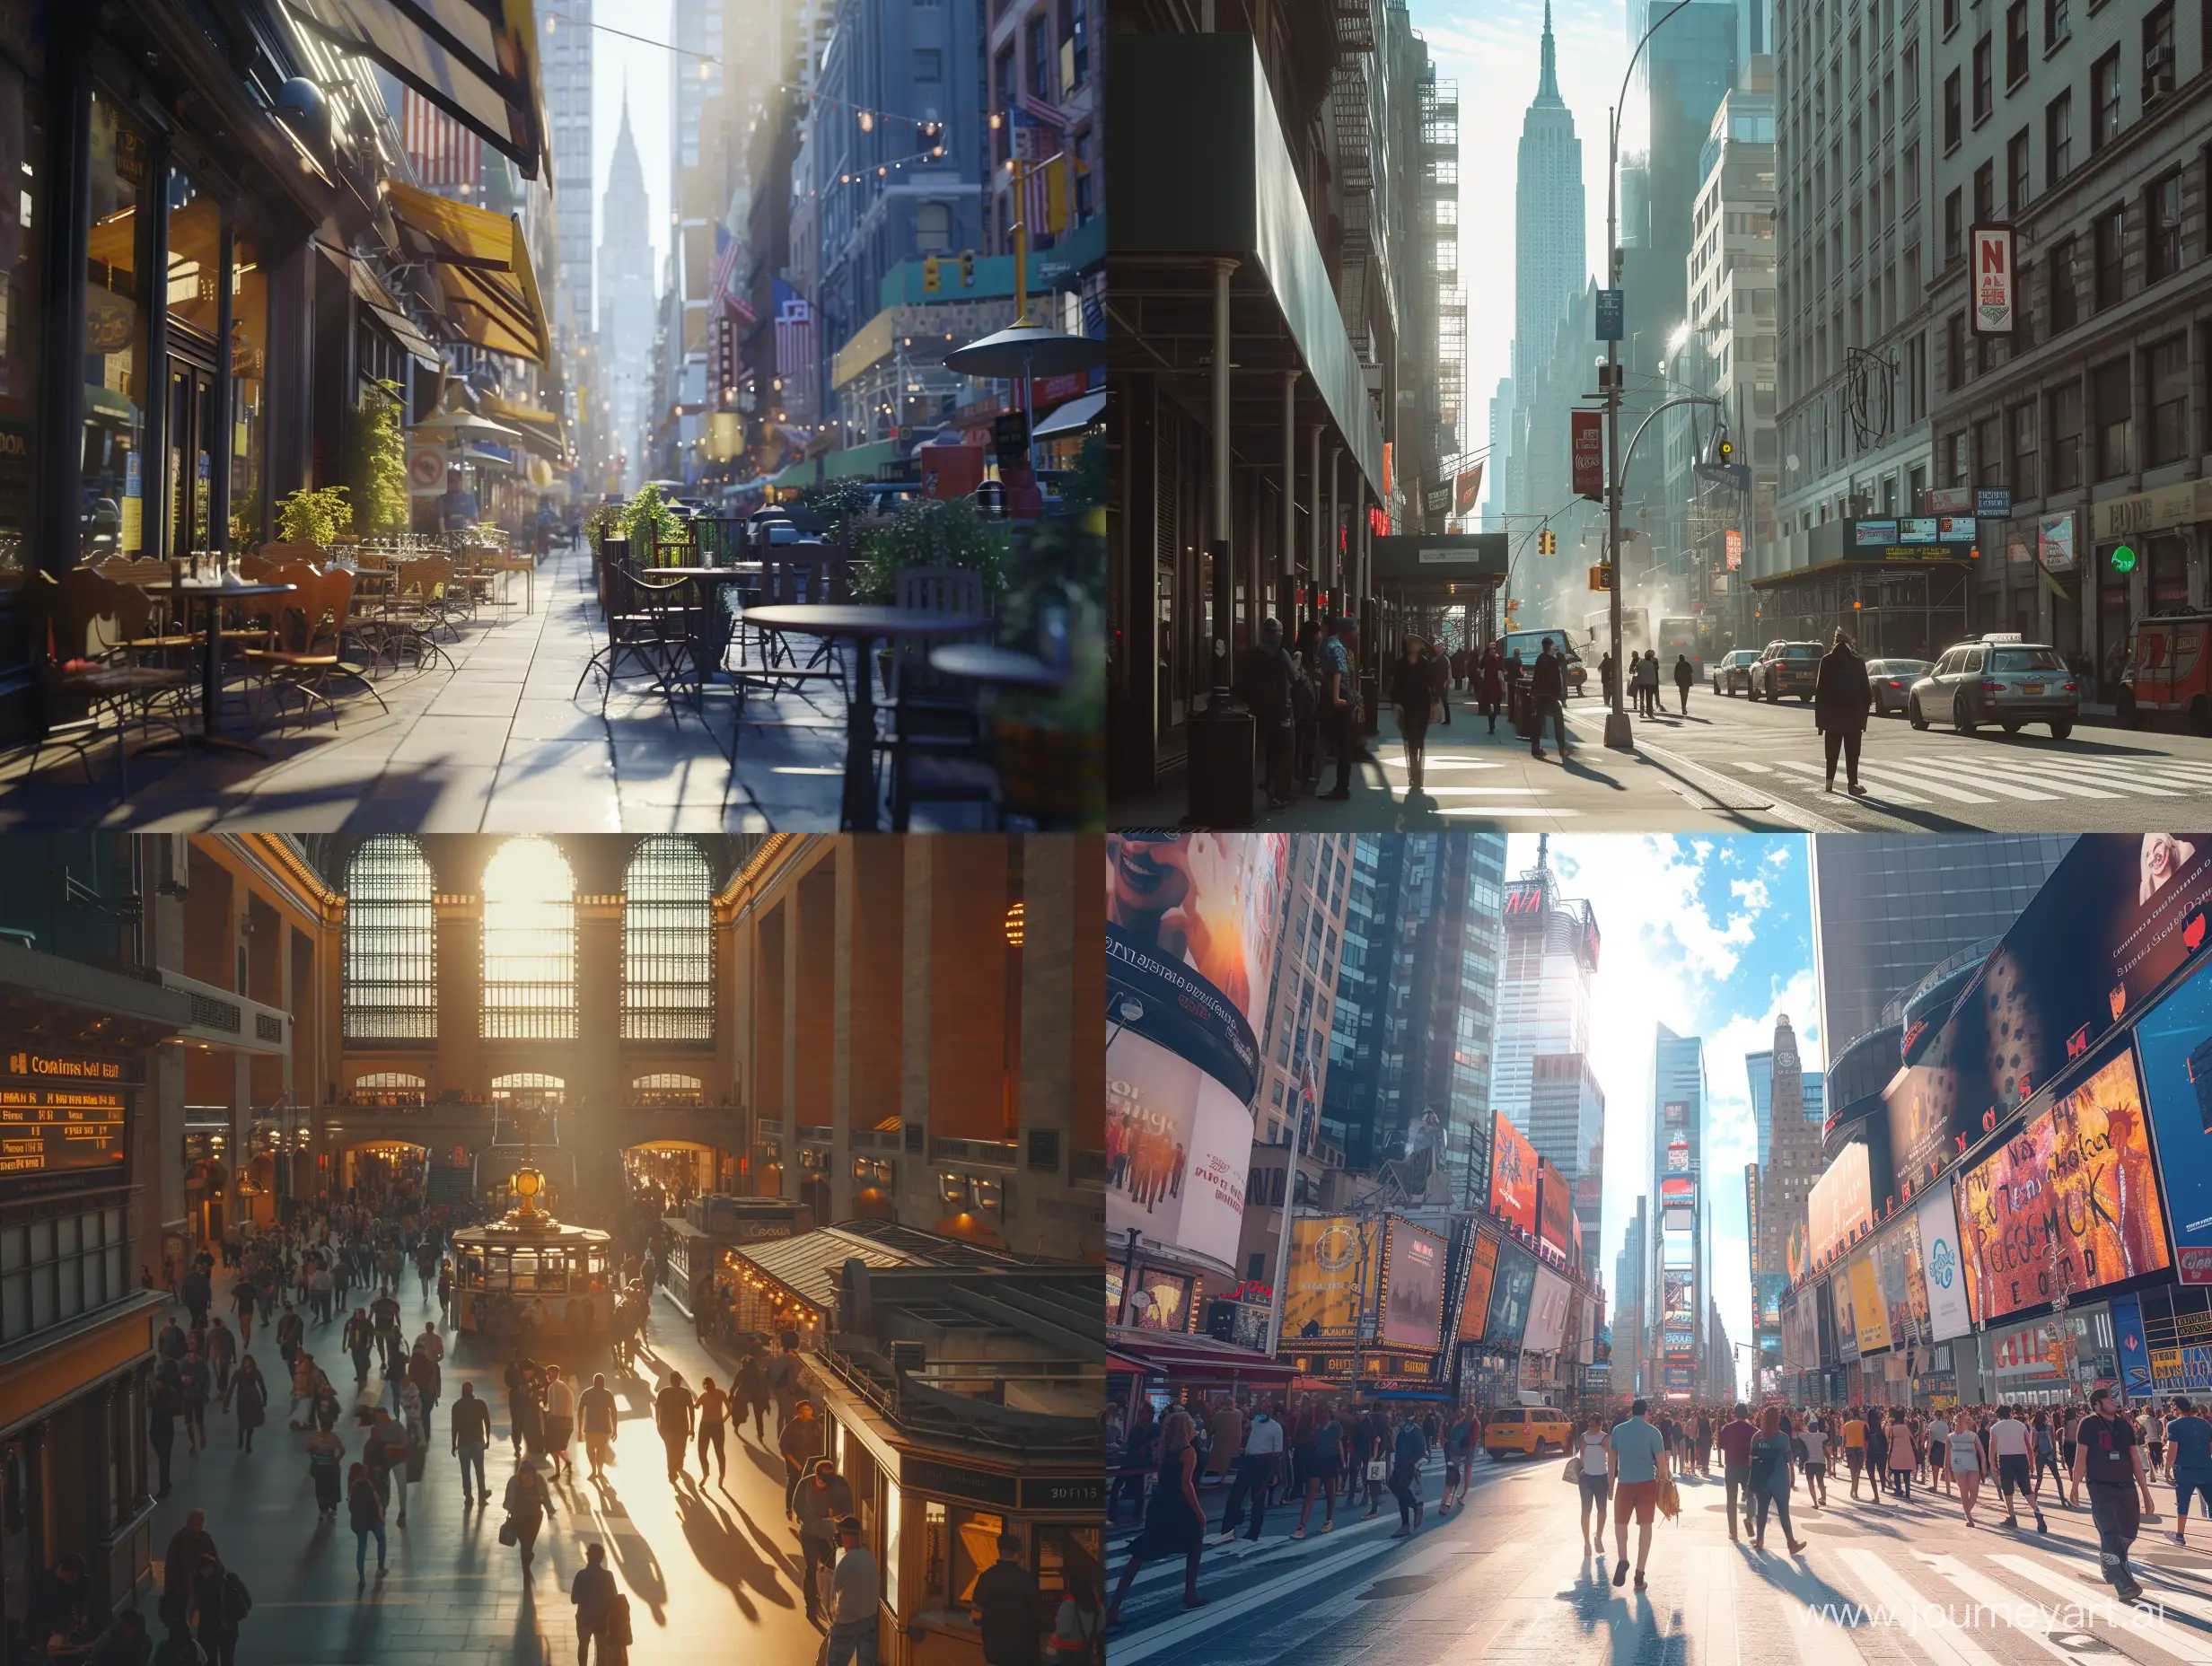 Vibrant-Procedural-New-York-City-Street-Scene-in-4K-Natural-Lighting